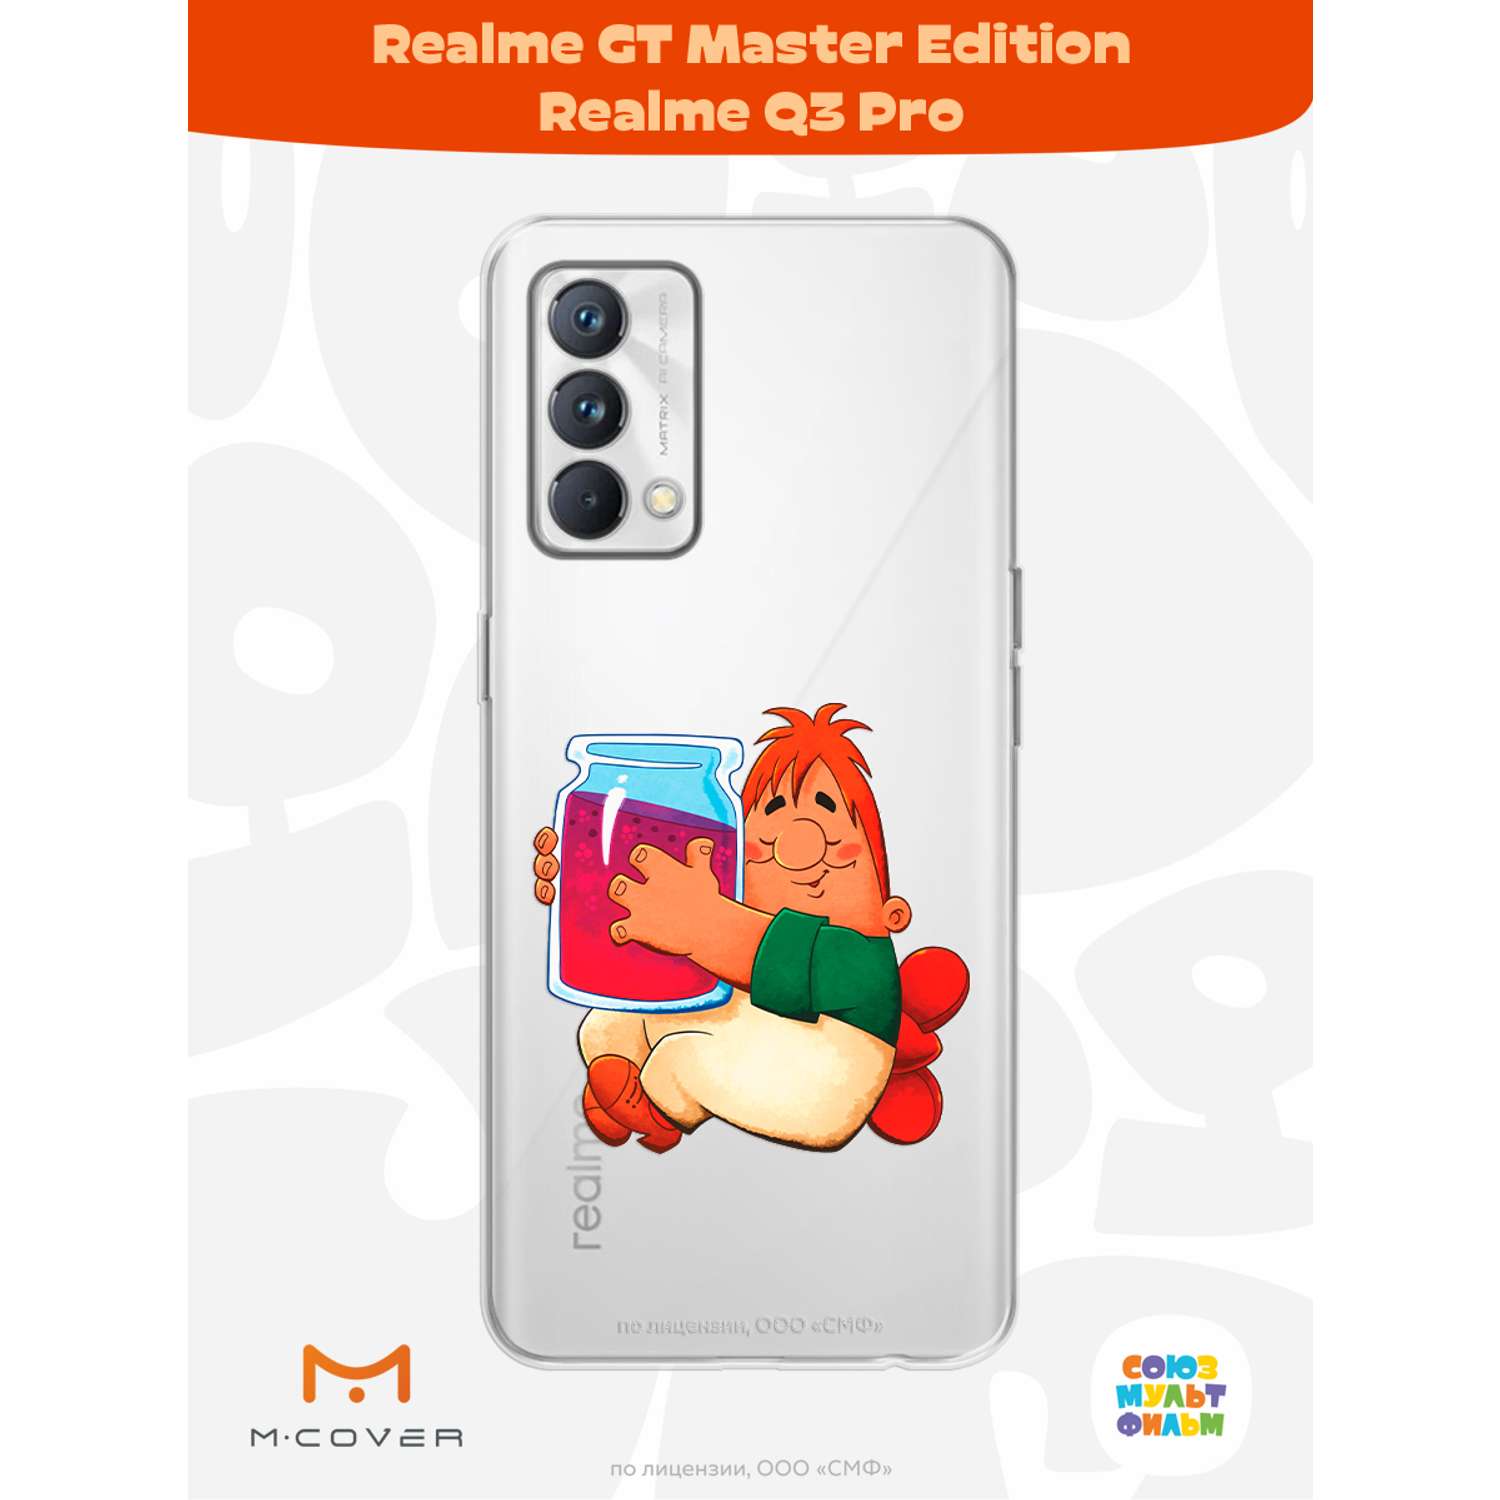 Силиконовый чехол Mcover для смартфона Realme GT Master Edition Q3 Pro Союзмультфильм баночка варенья - фото 2